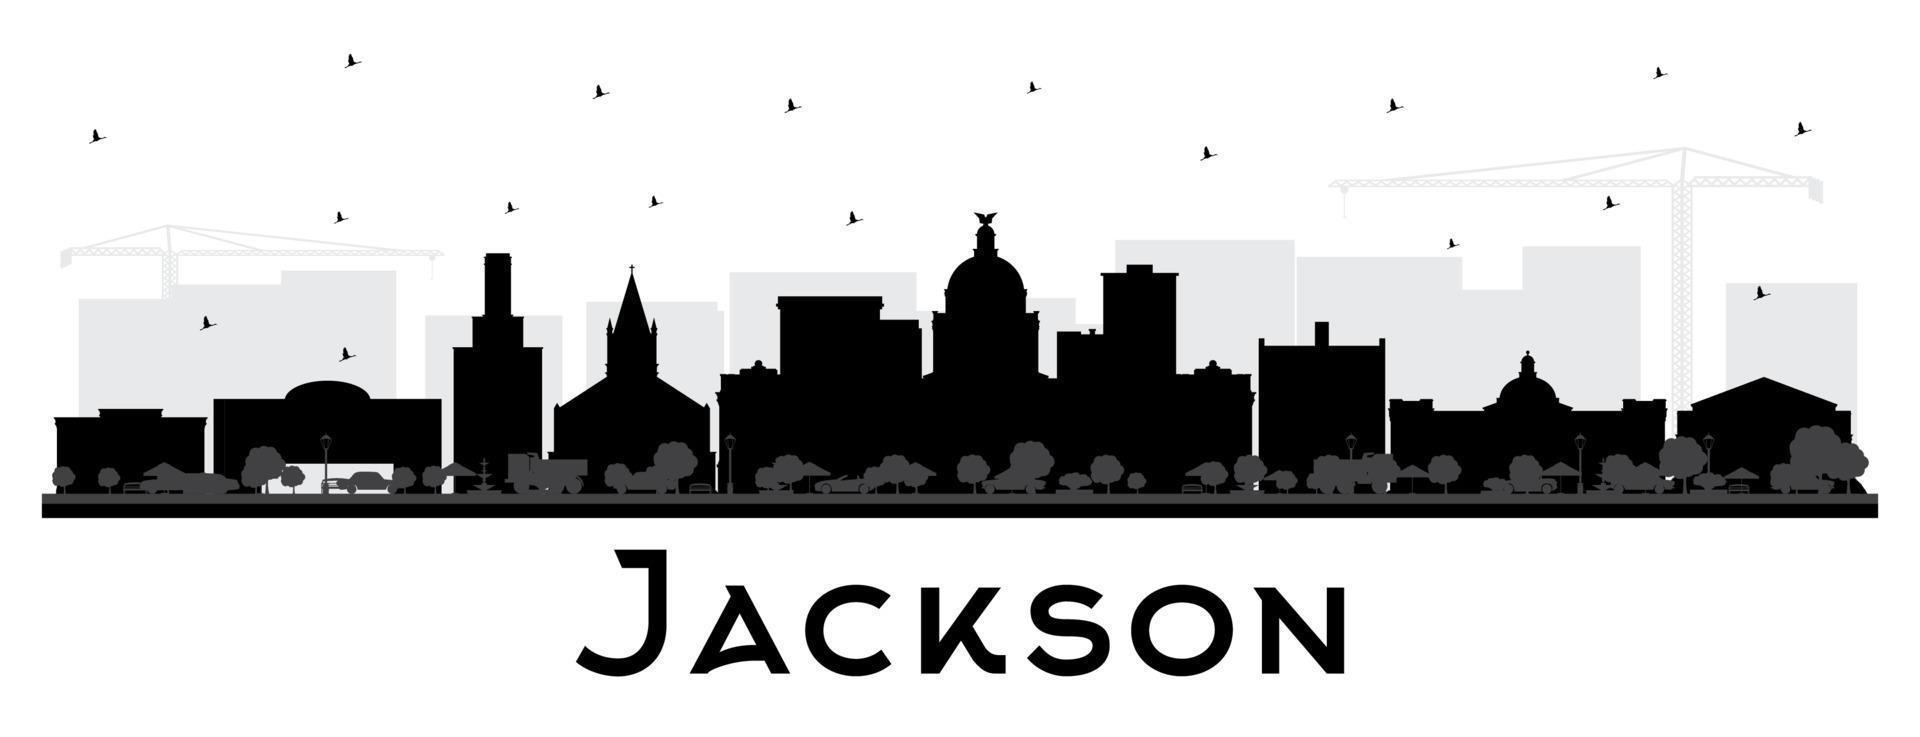 Jackson mississippi stad horisont silhuett med svart byggnader isolerat på vit. vektor